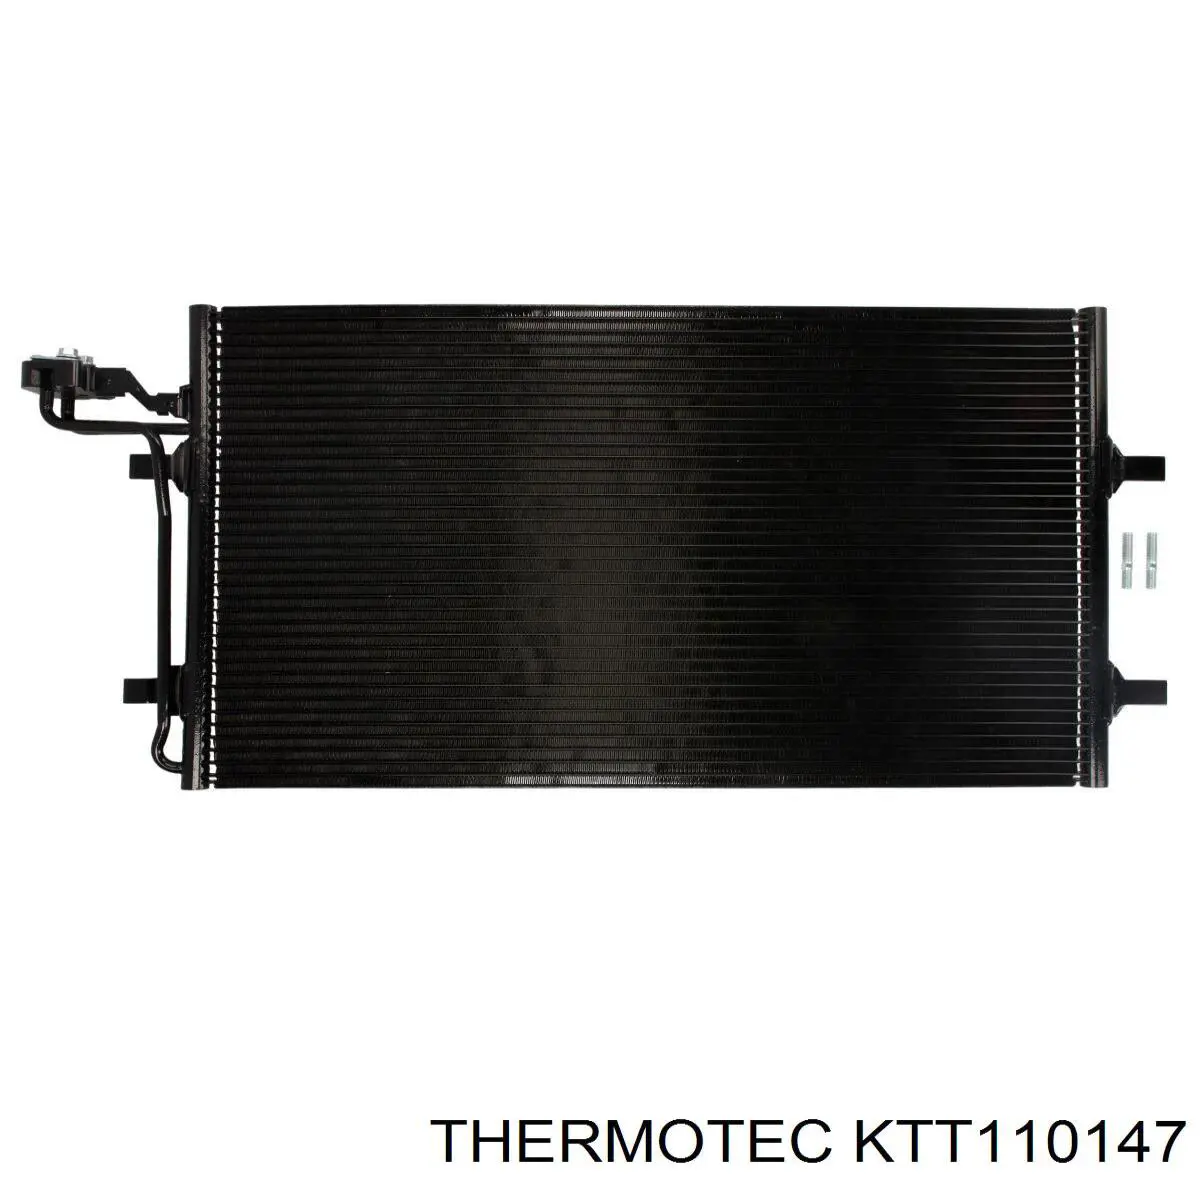 KTT110147 Thermotec condensador aire acondicionado